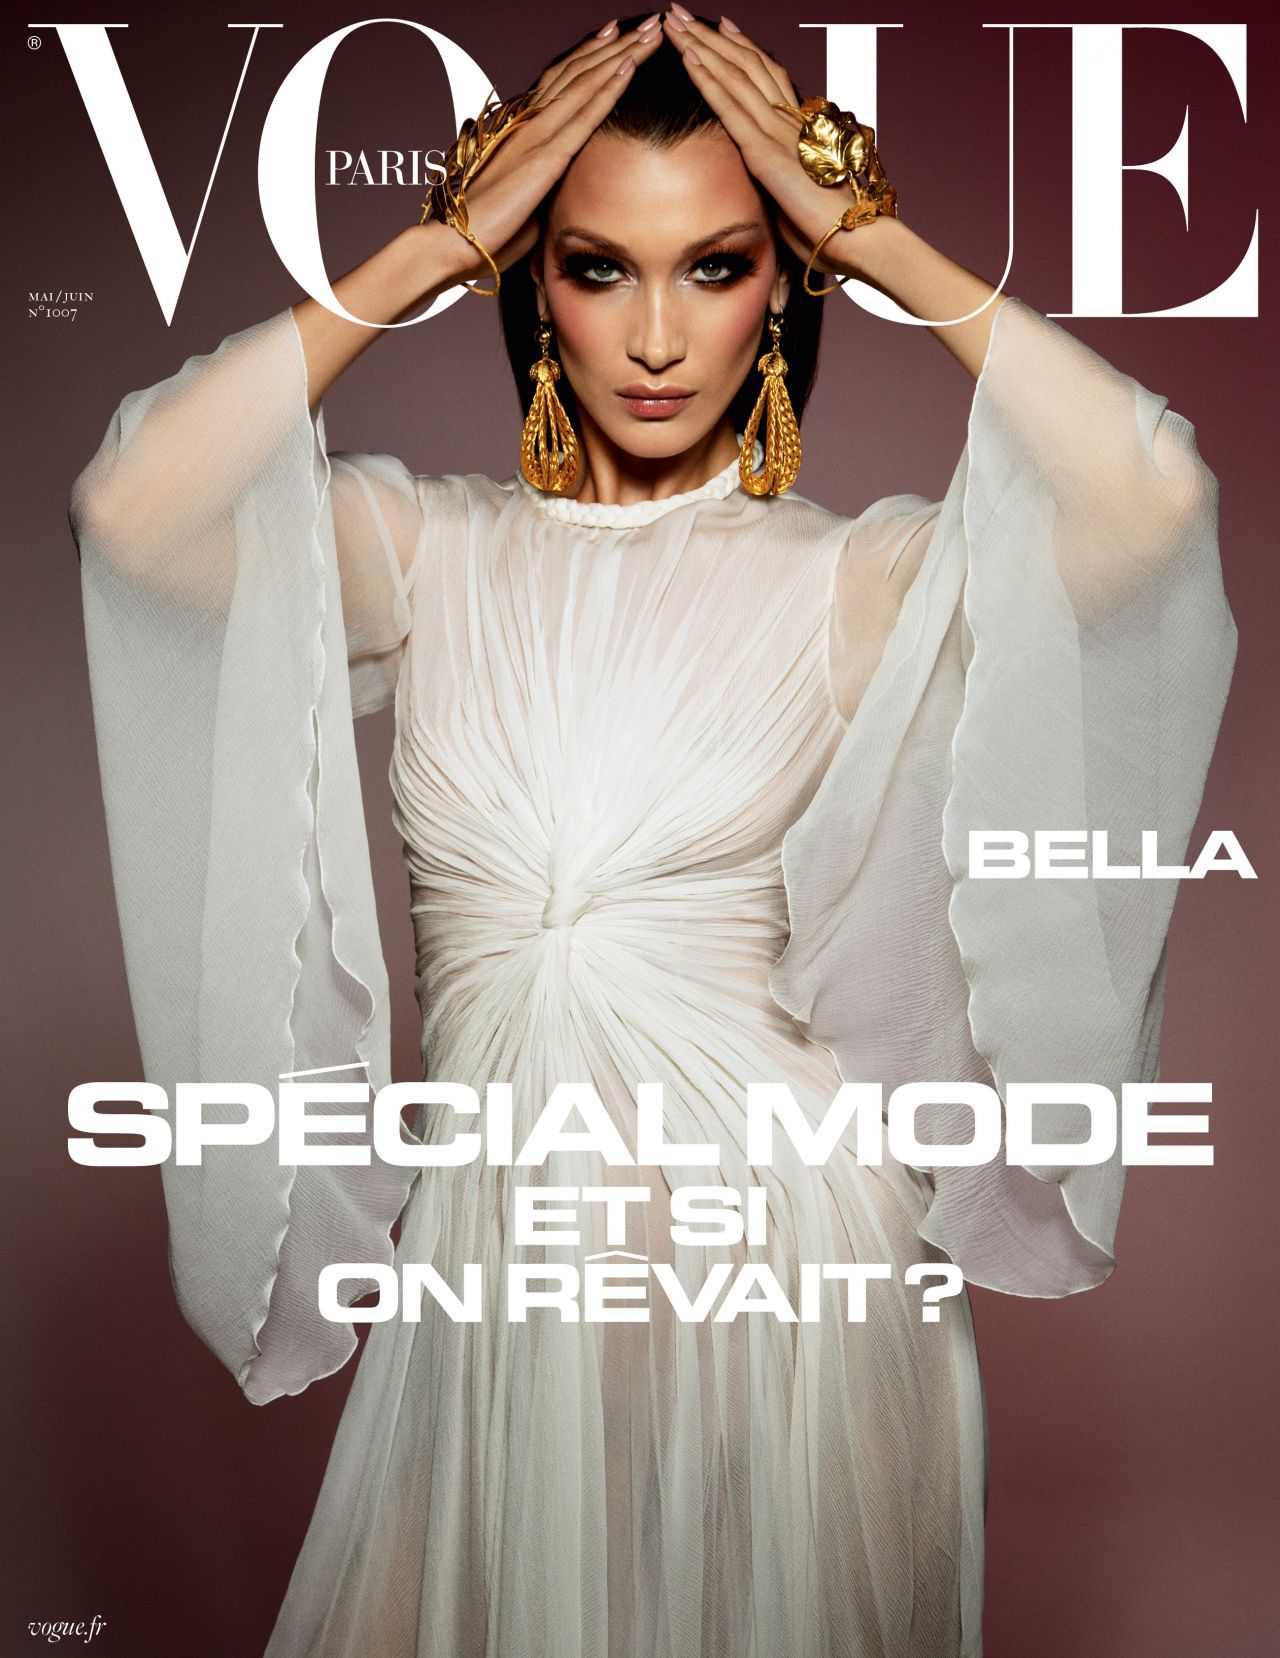 Bella Hadid  Covers  Vogue Paris May/June 2020